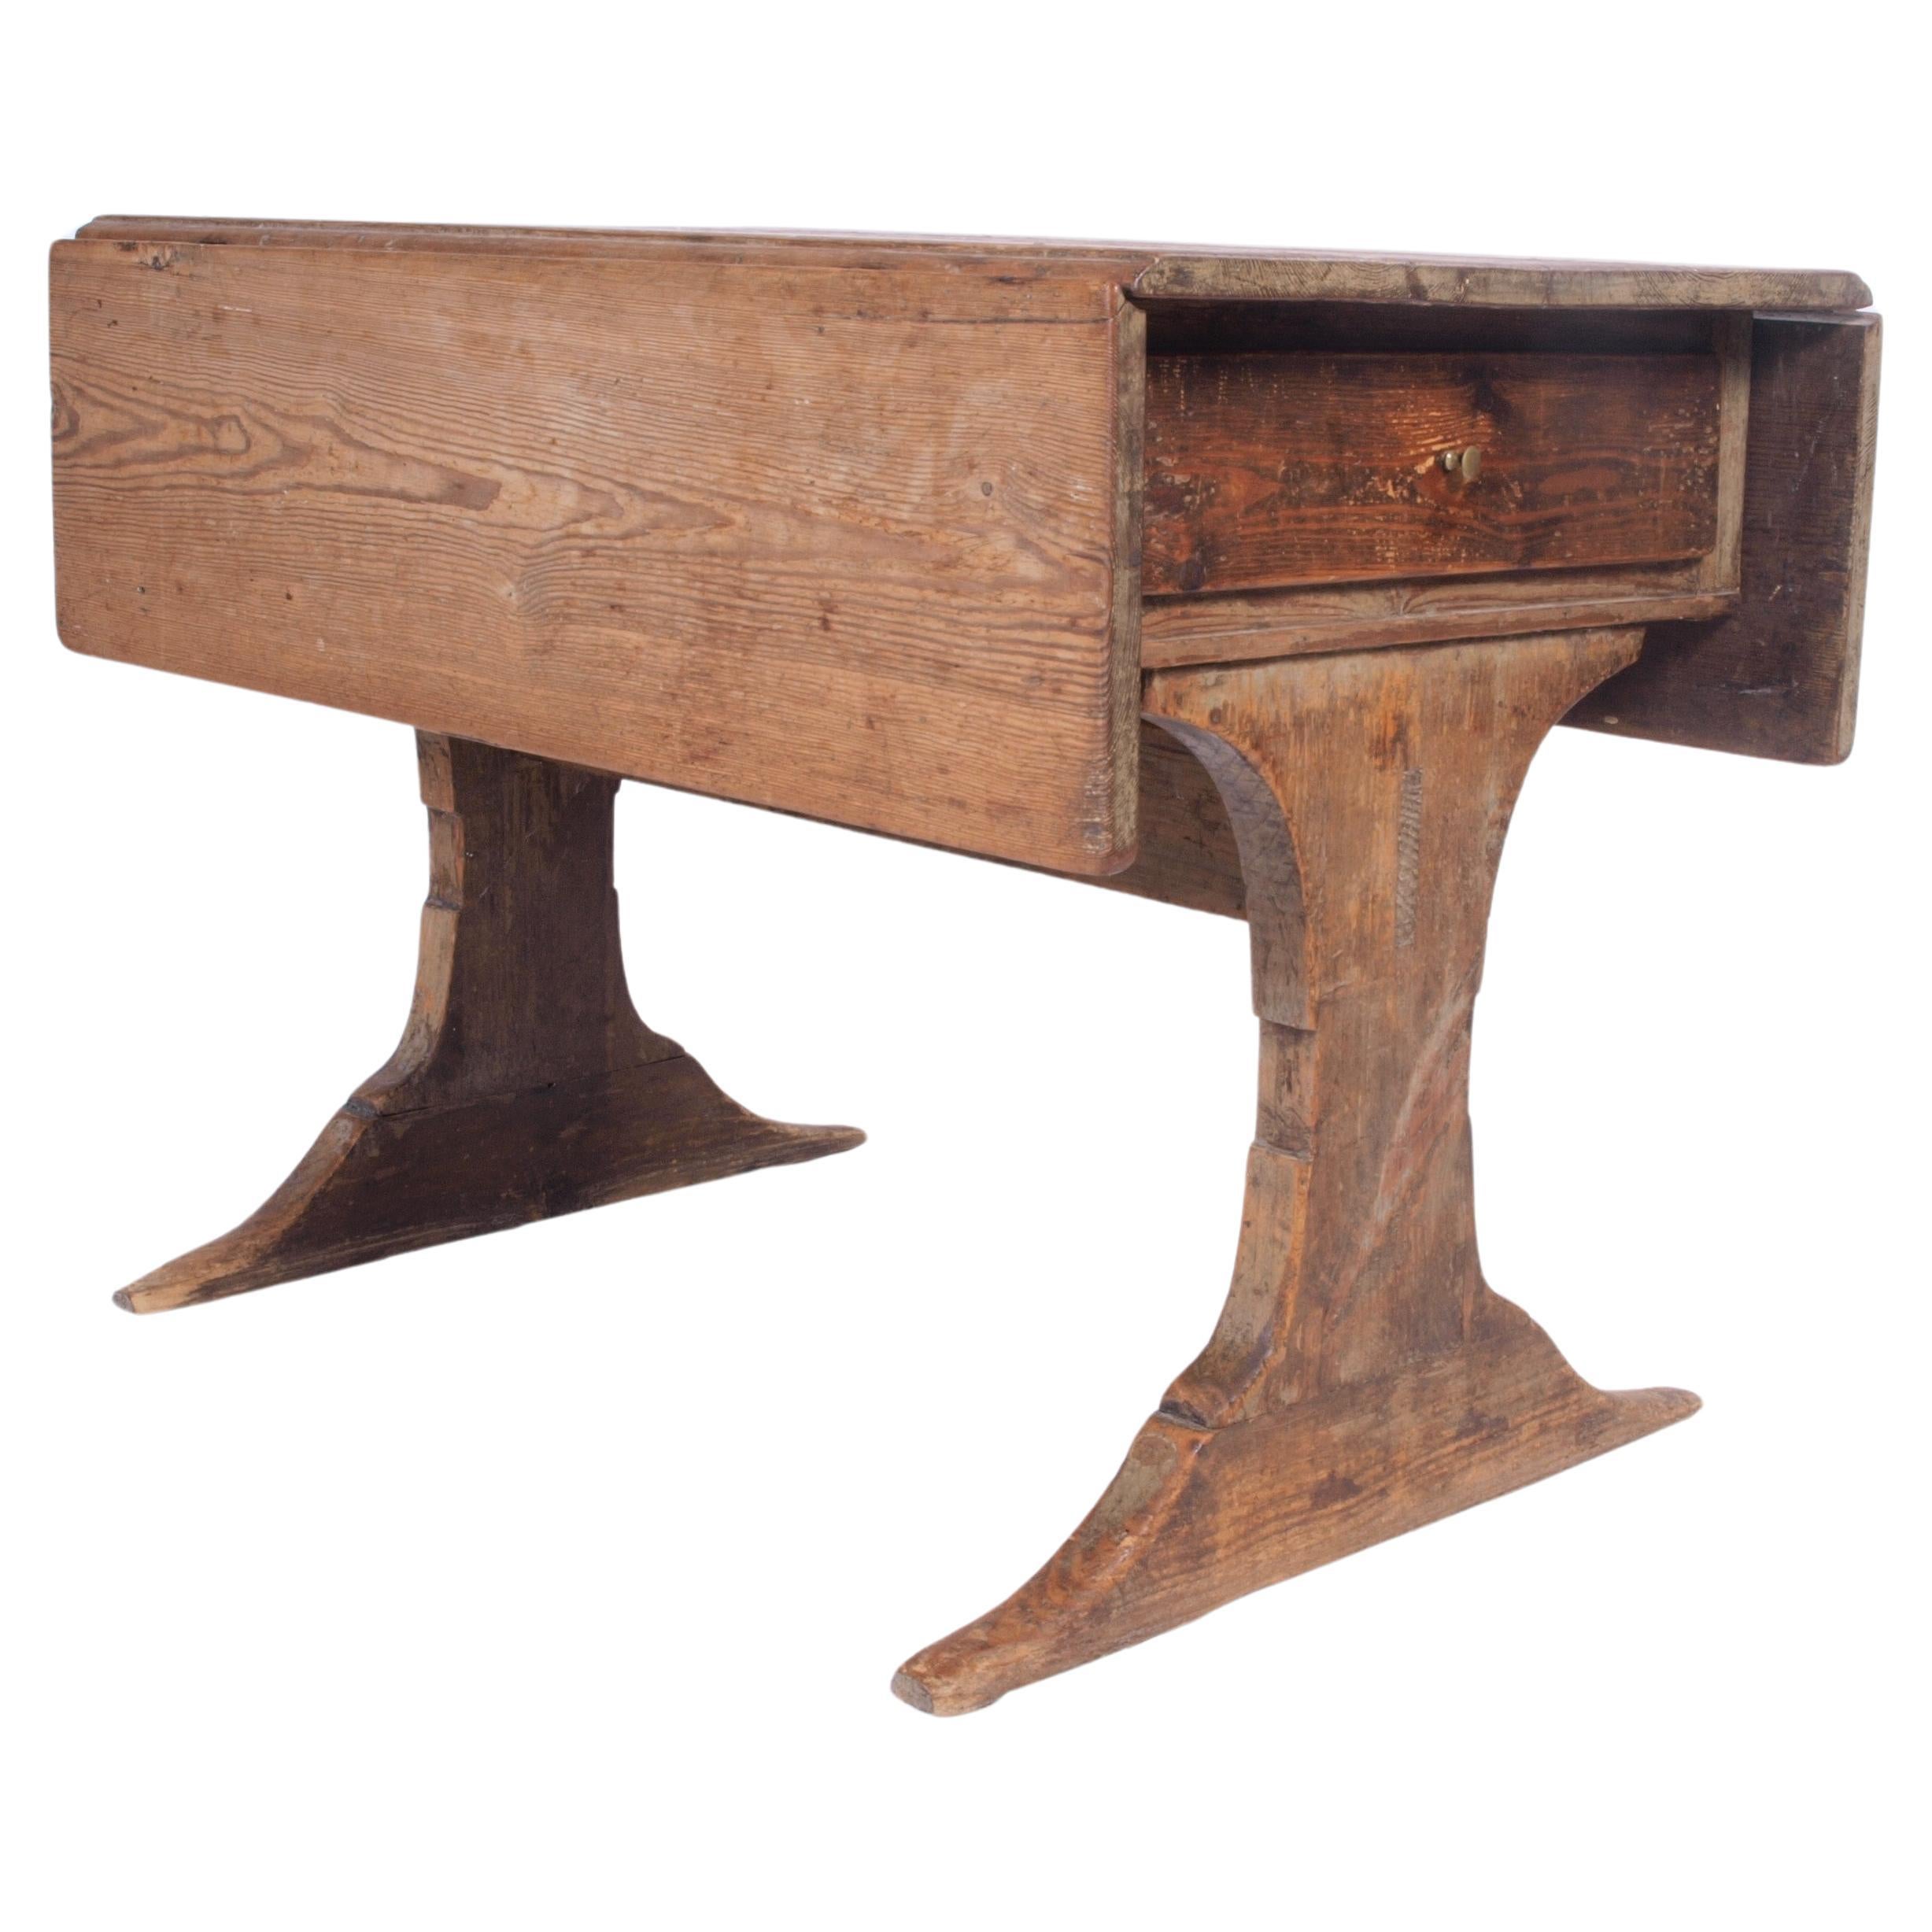 Danish Farmhouse Table, 1800s